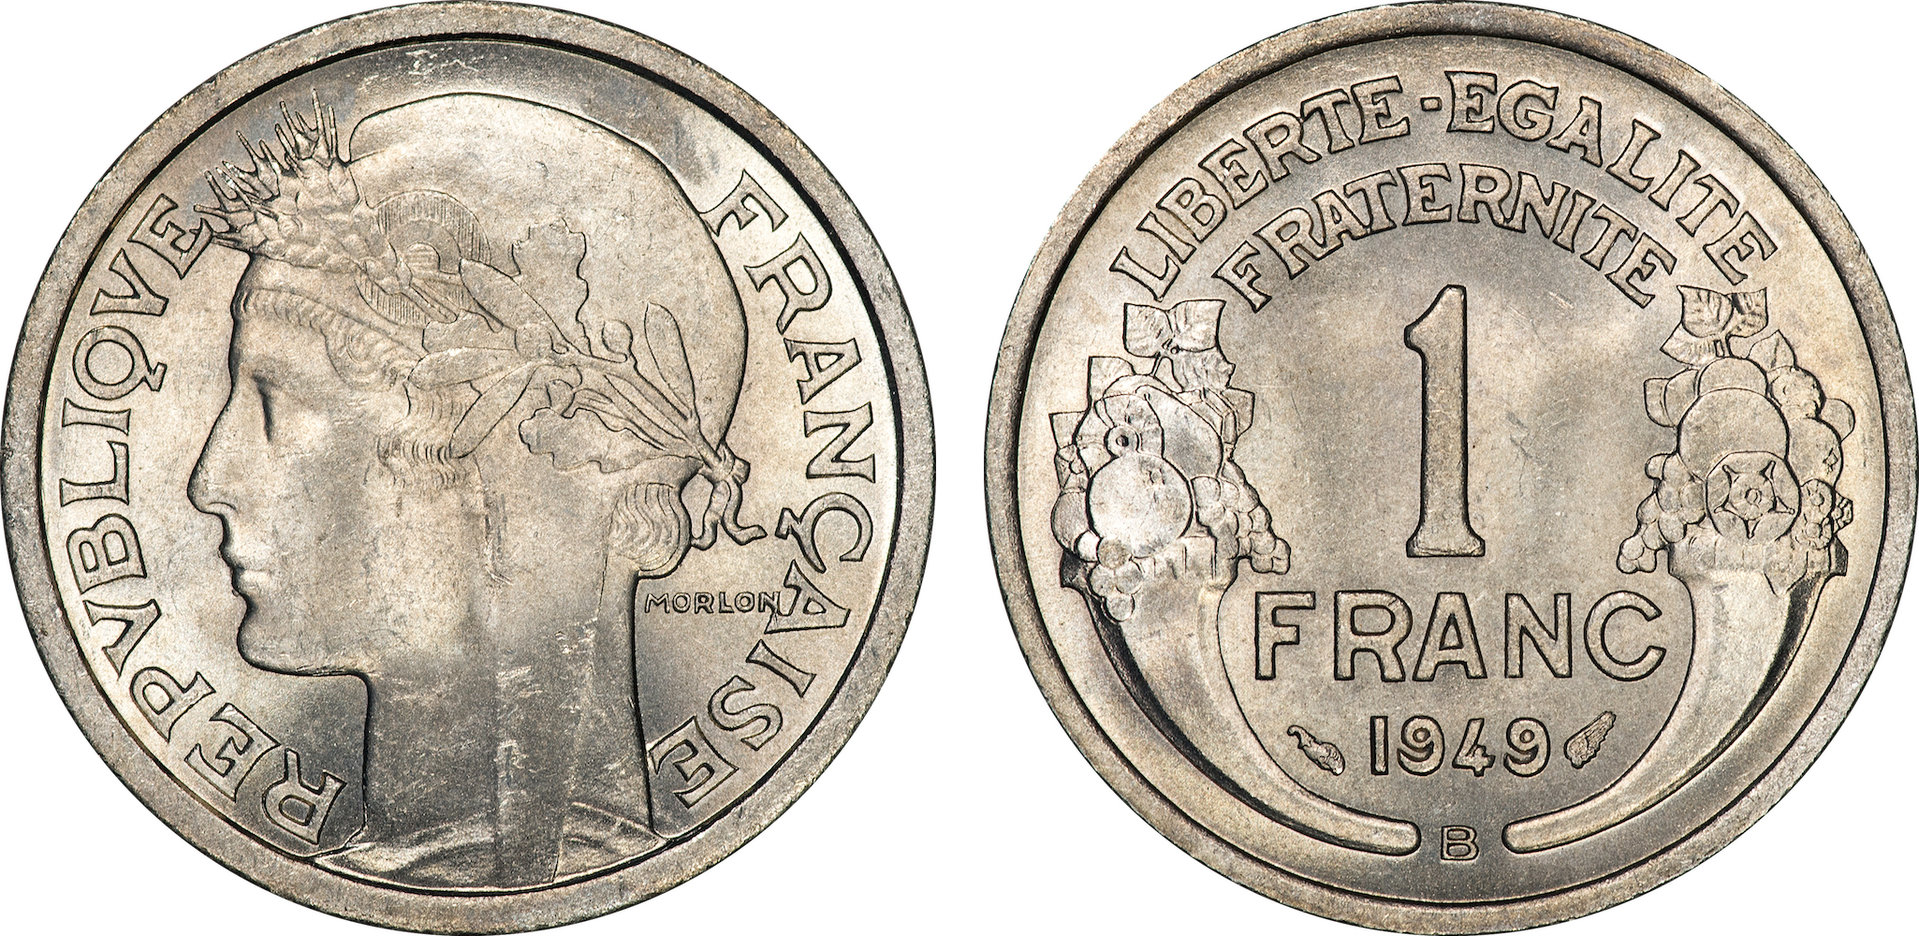 France - 1949 B 1 Franc.jpg